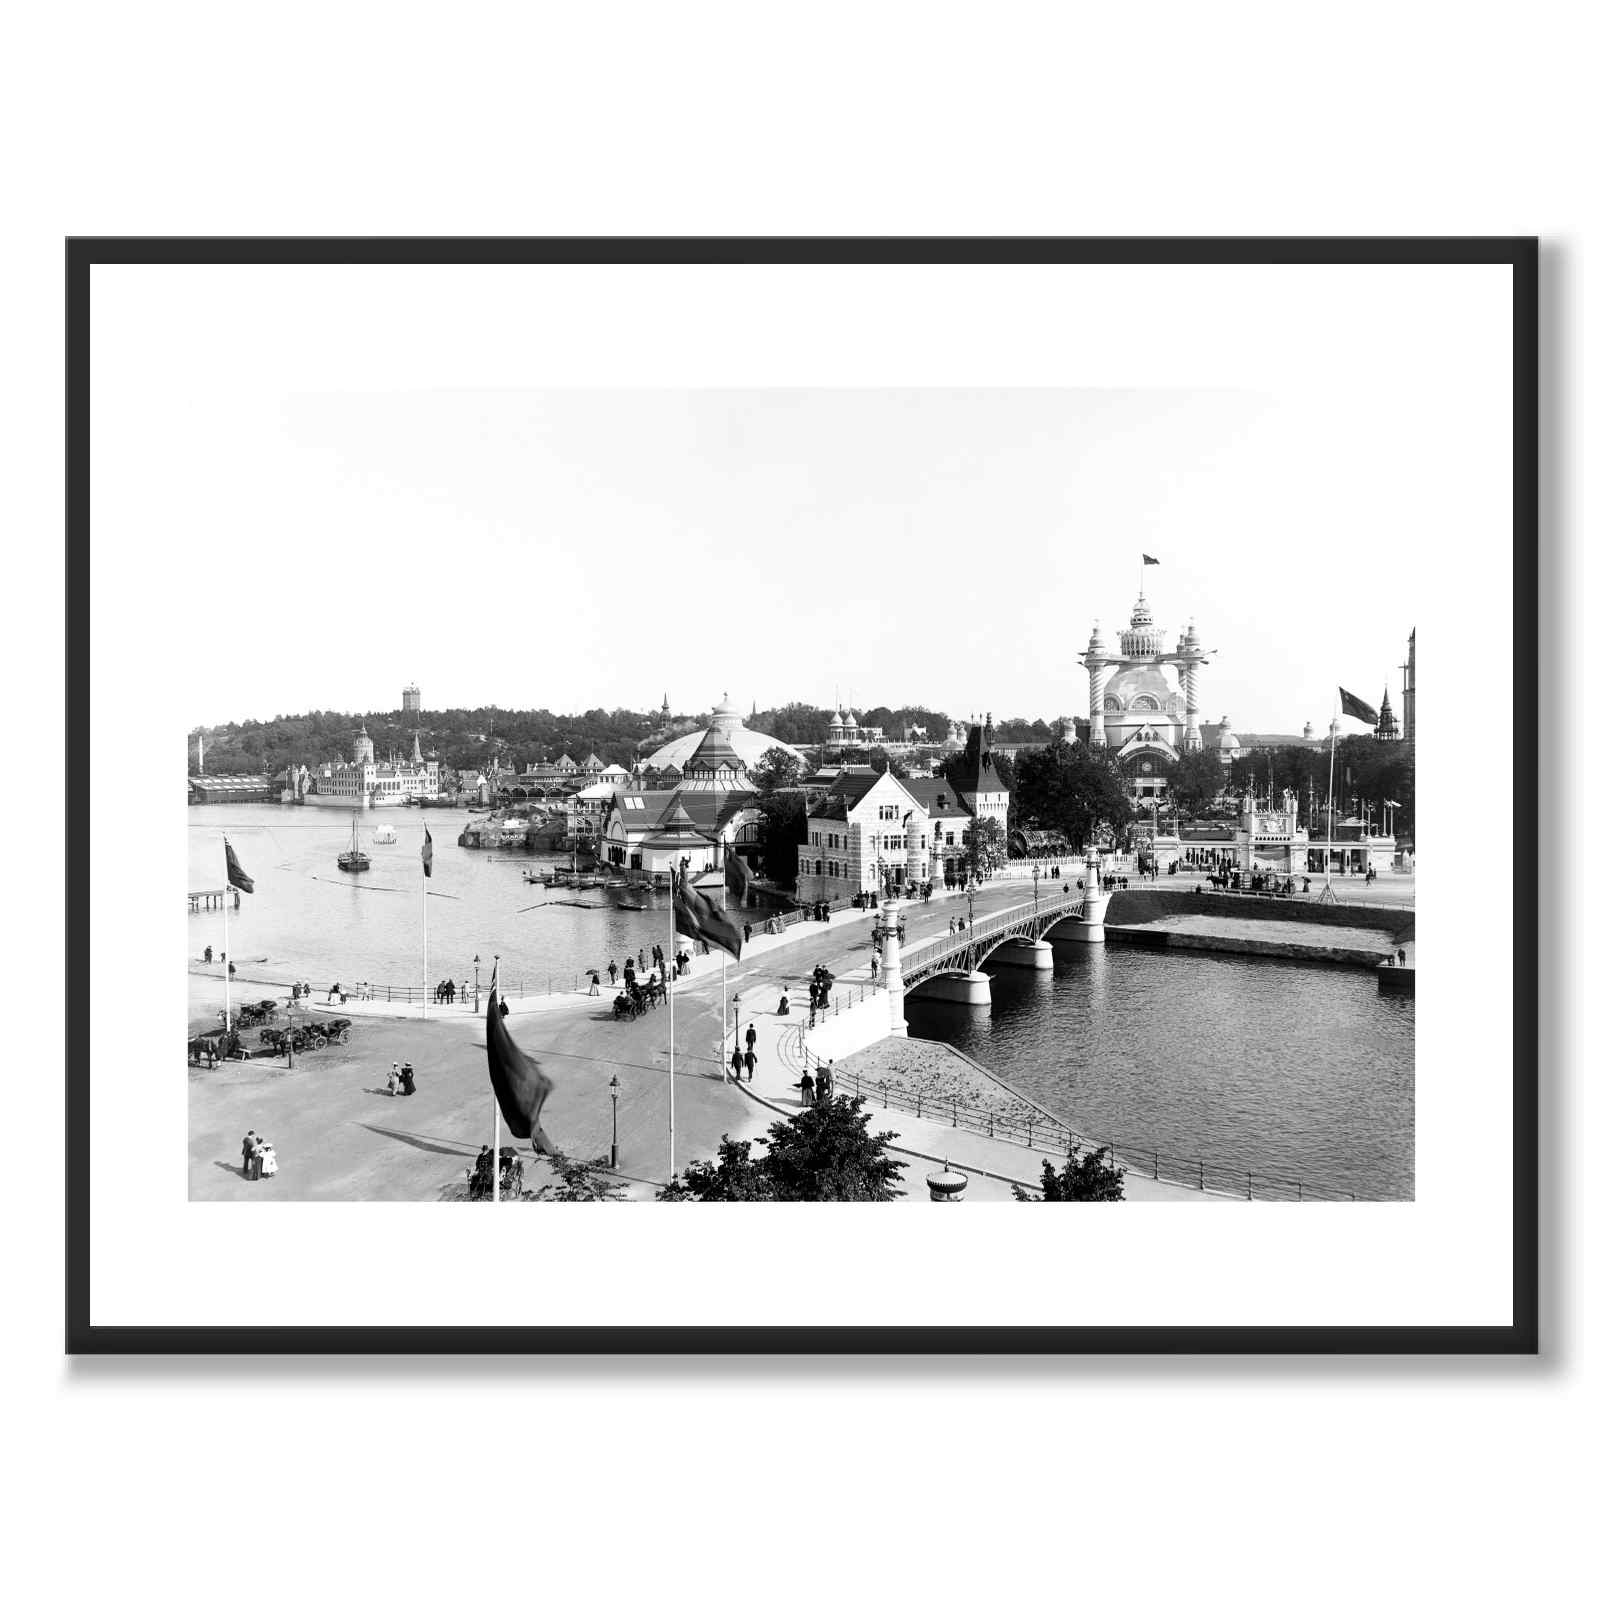 Djurgårdsbroen i 1897